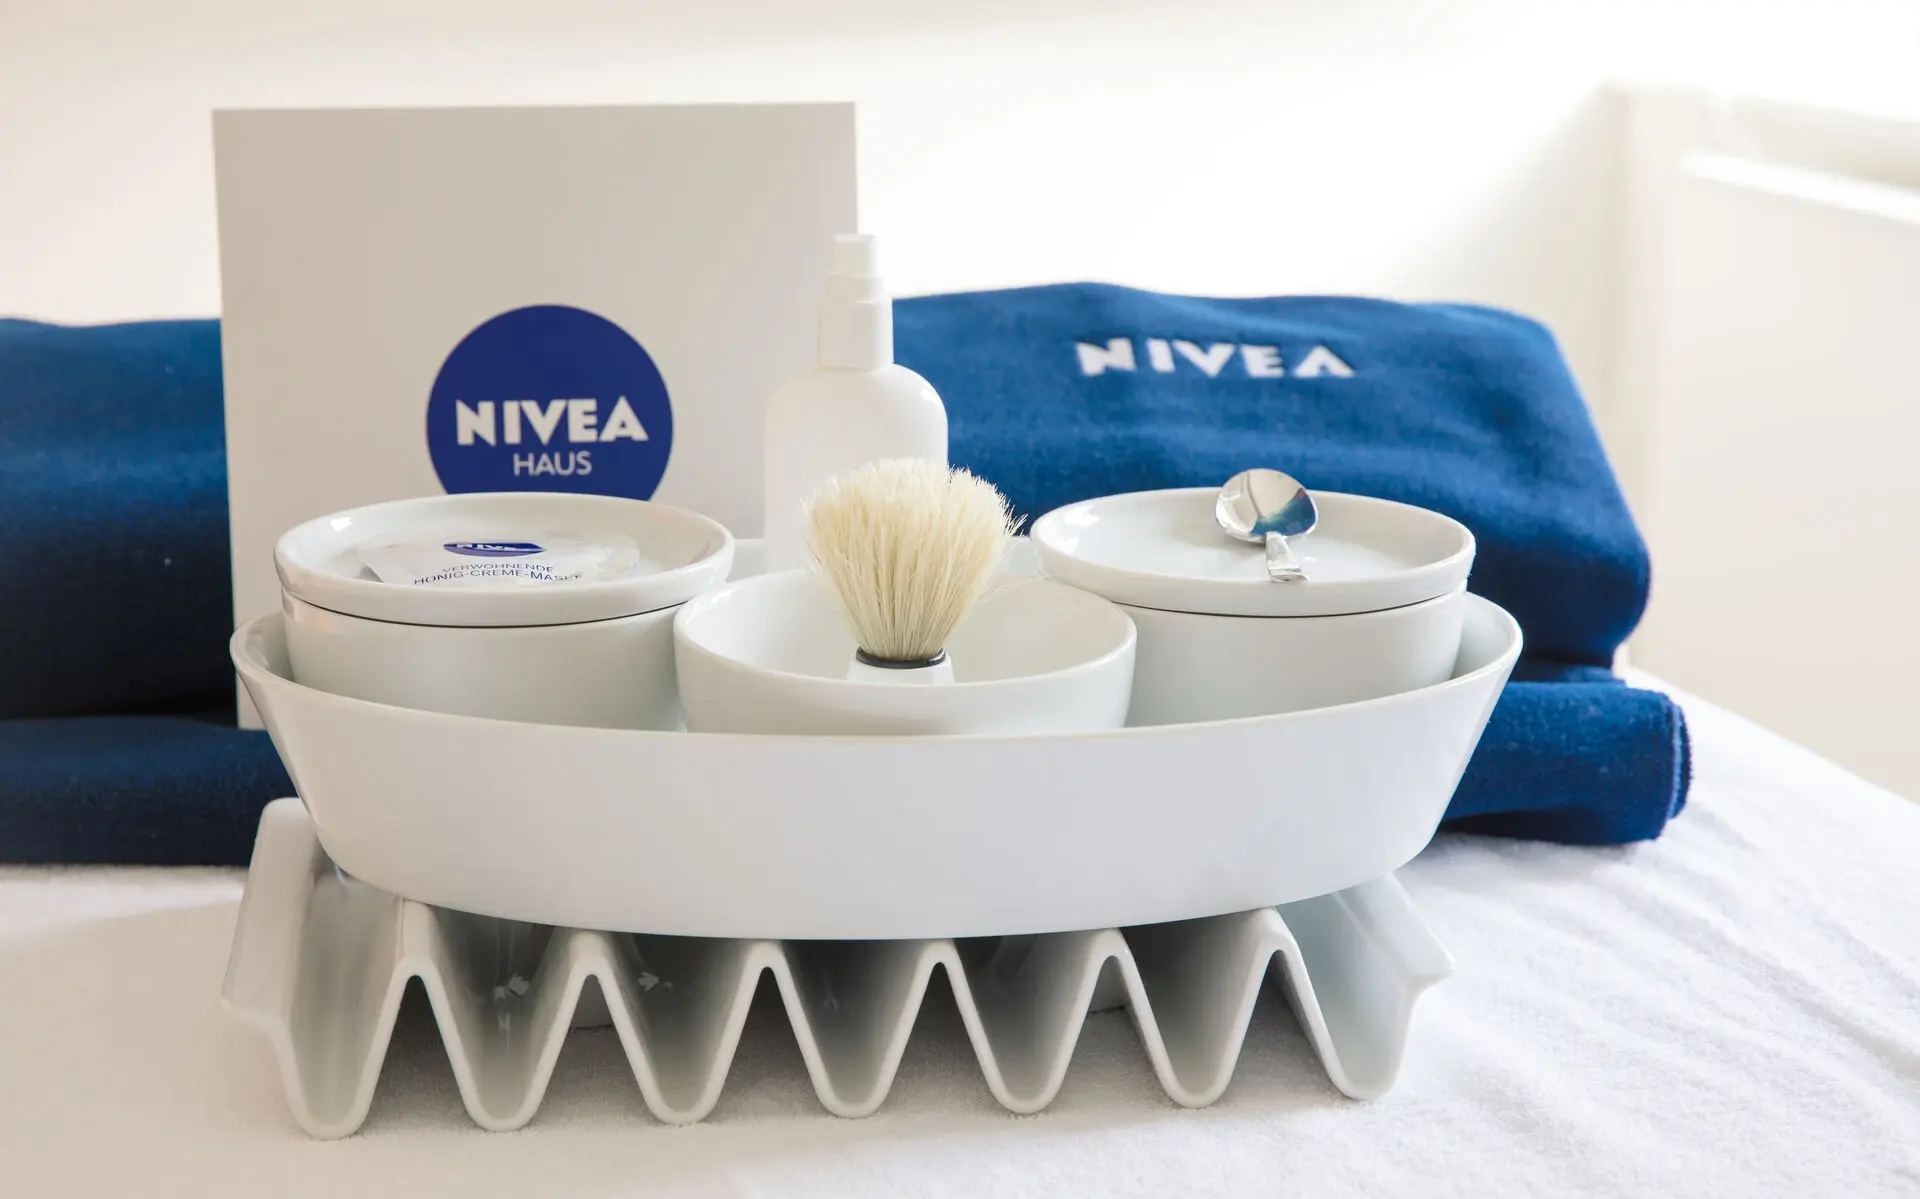 Vor zwei dunkelblauen, gefalteten Handtüchern mit NIVEA-Logo stehen in einer weißen, ovalen Schale drei weiße, runde Schüsselchen mit Deckel. Dazwischen ist eine weiße NIVEA-Tüte mit dunkelblauem NIVEA-Logo platziert.